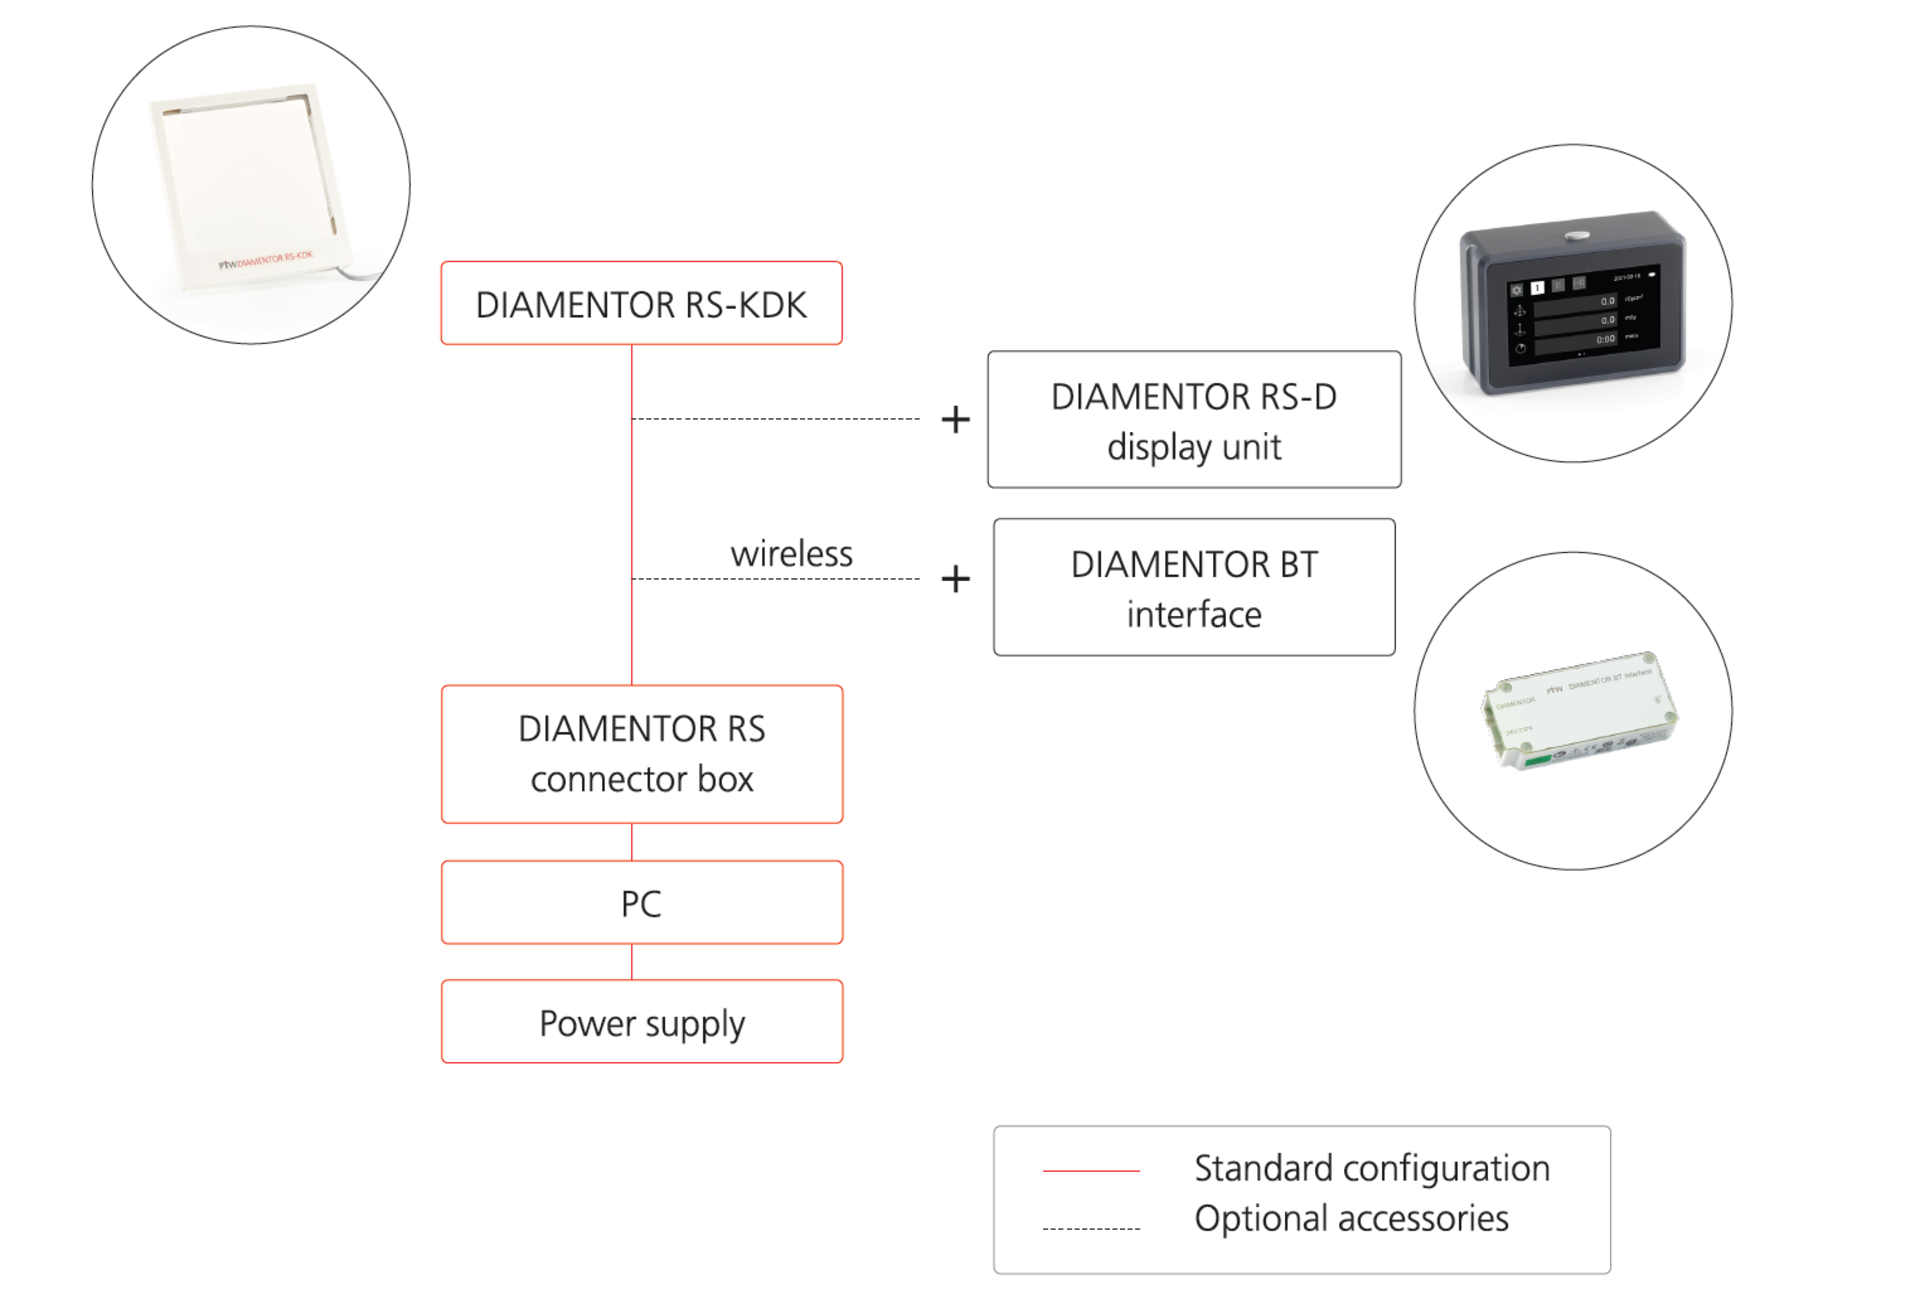 DIAMENTOR RS-KDK Configuration